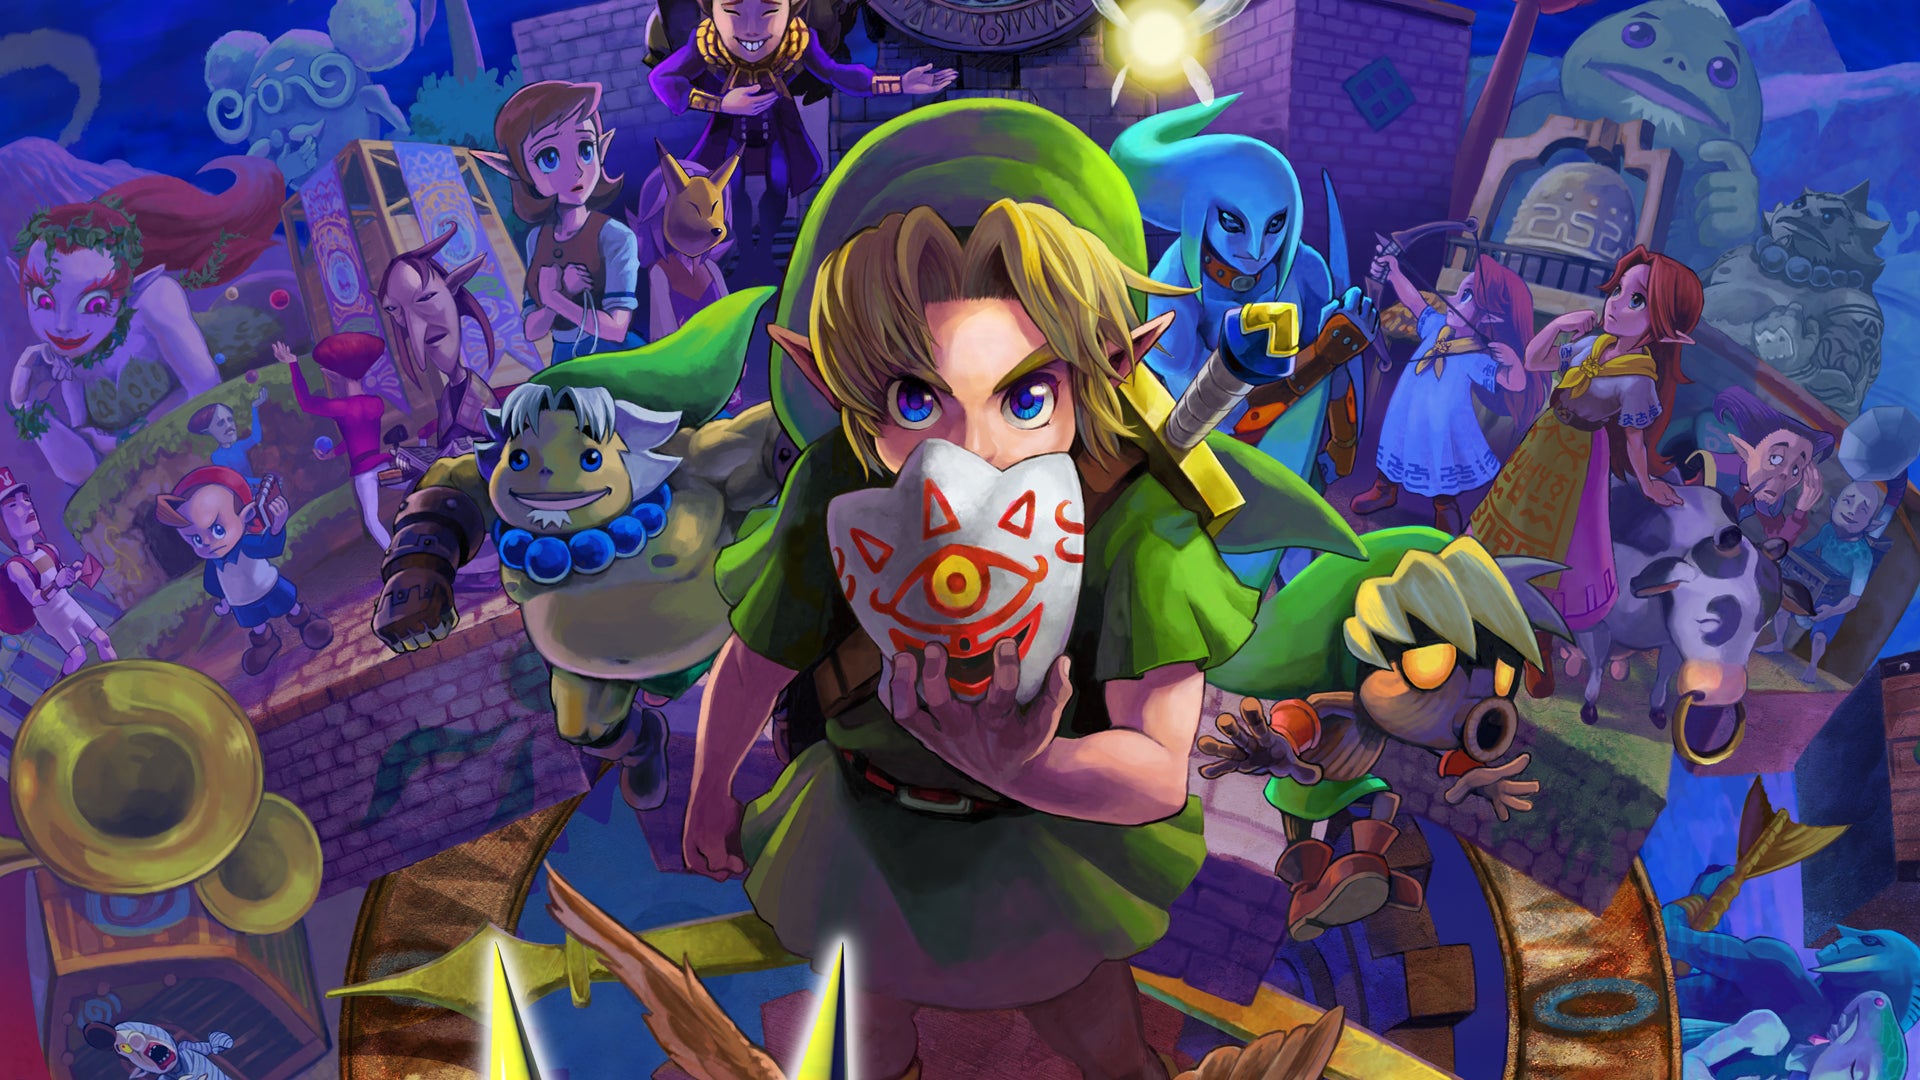 Obrazki dla Legend of Zelda: Majora's Mask - porównanie grafiki w wersji 3DS i N64